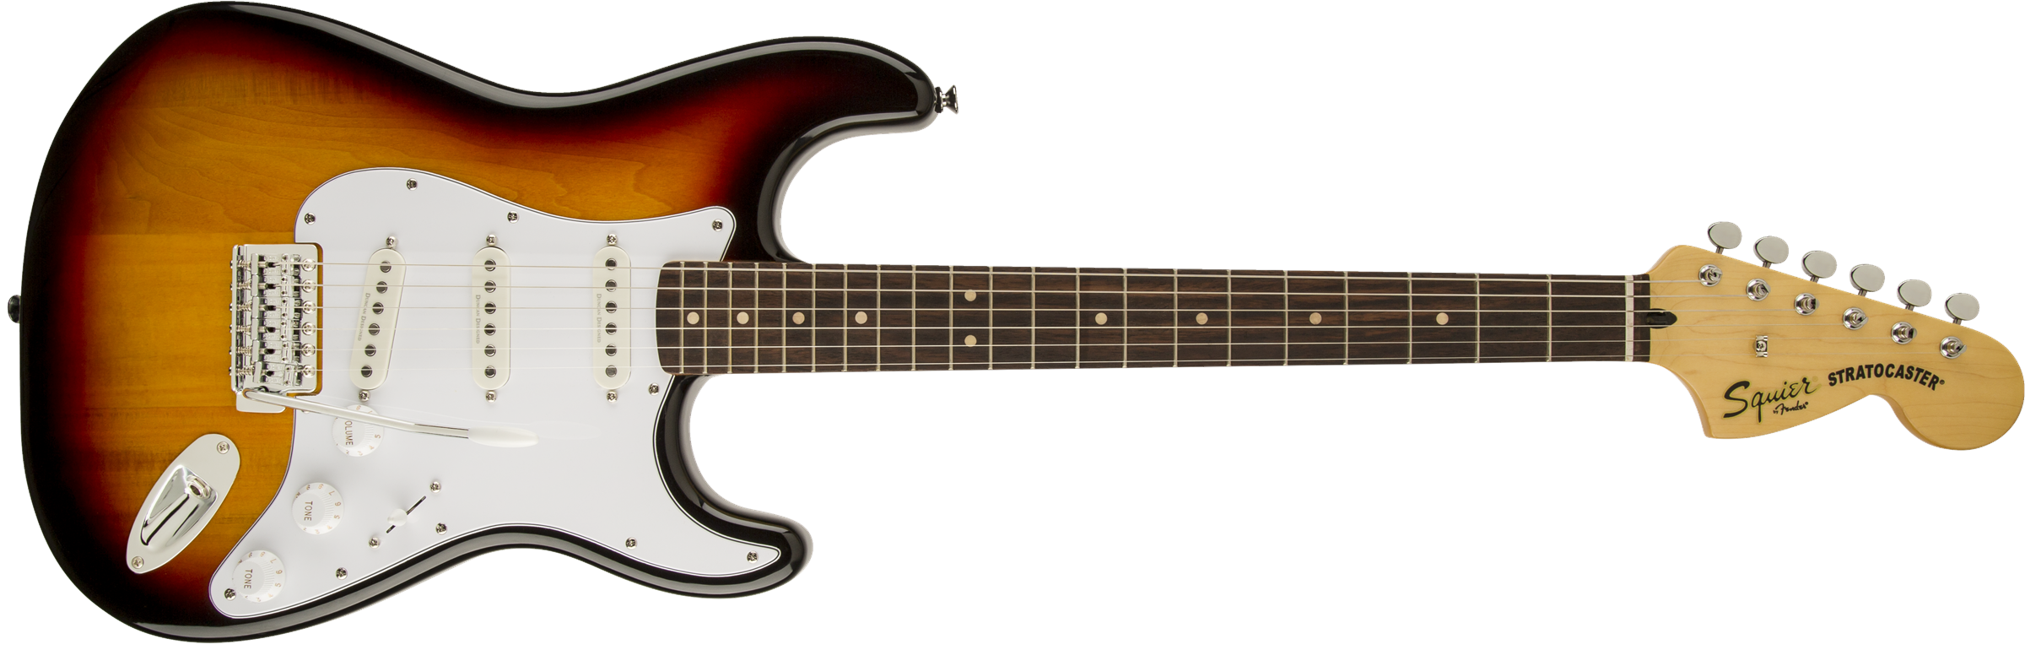 Fender Squier Vintage Modified Stratocaster Elektrisk Guitar (3-Color Sunburst)